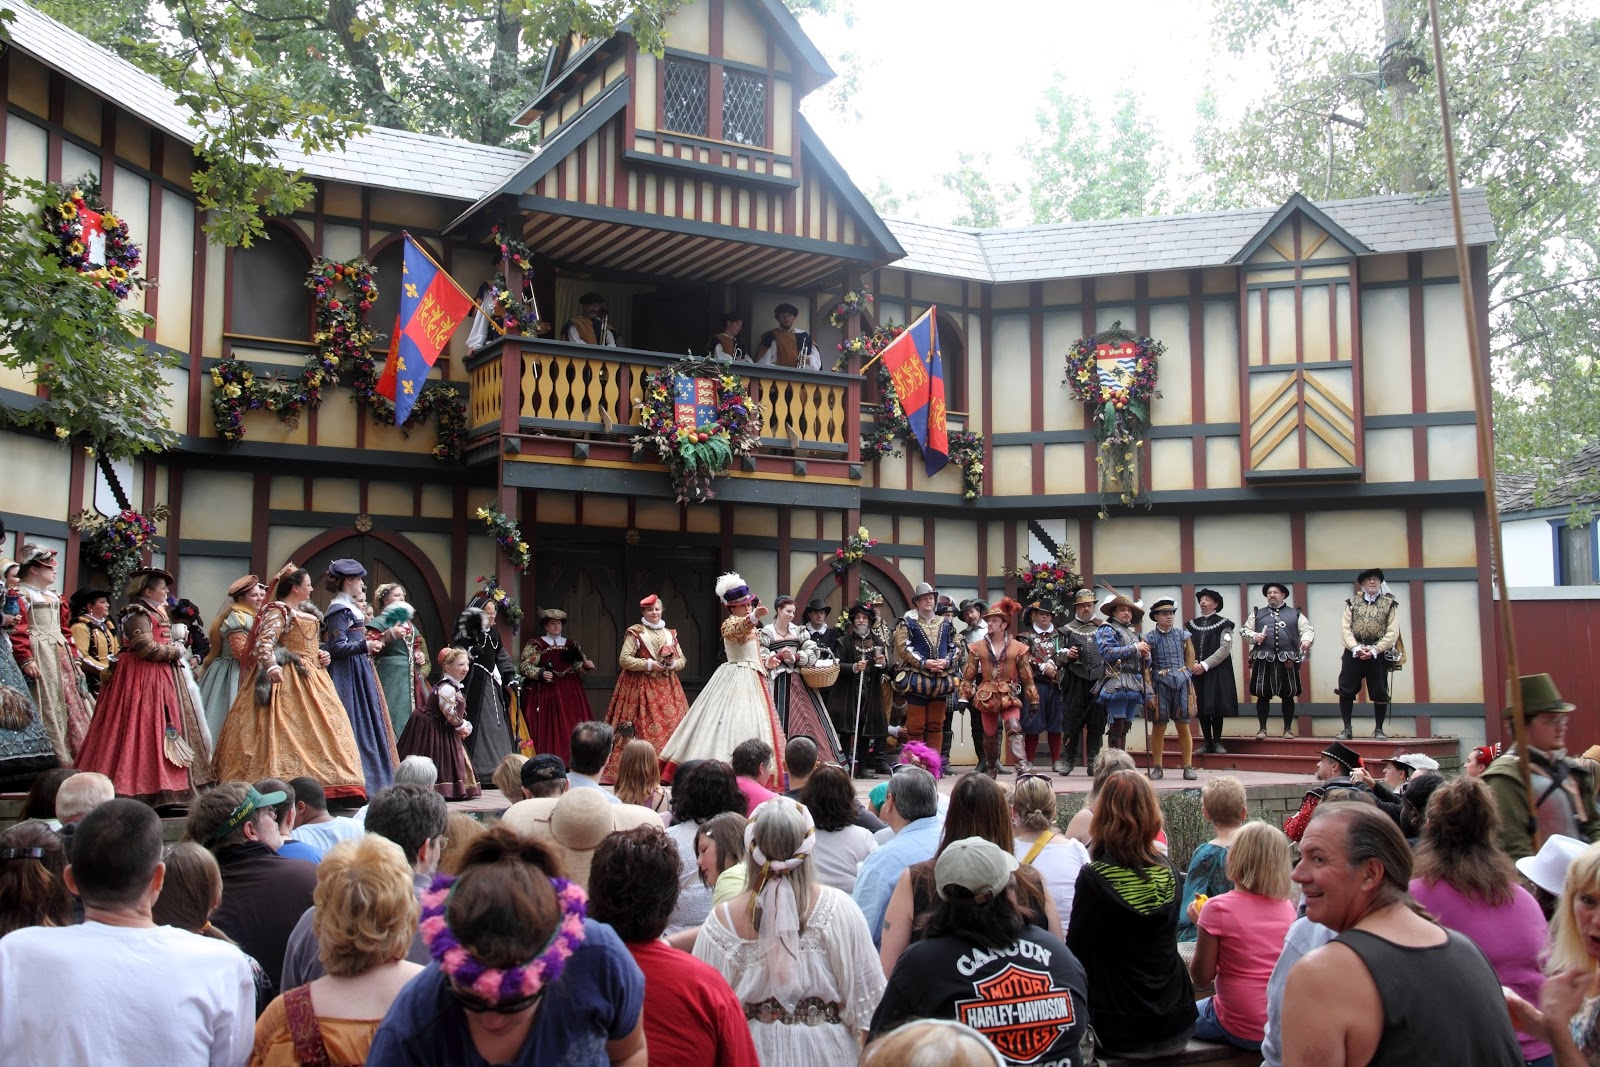 Renaissance festival Shakespeare performance